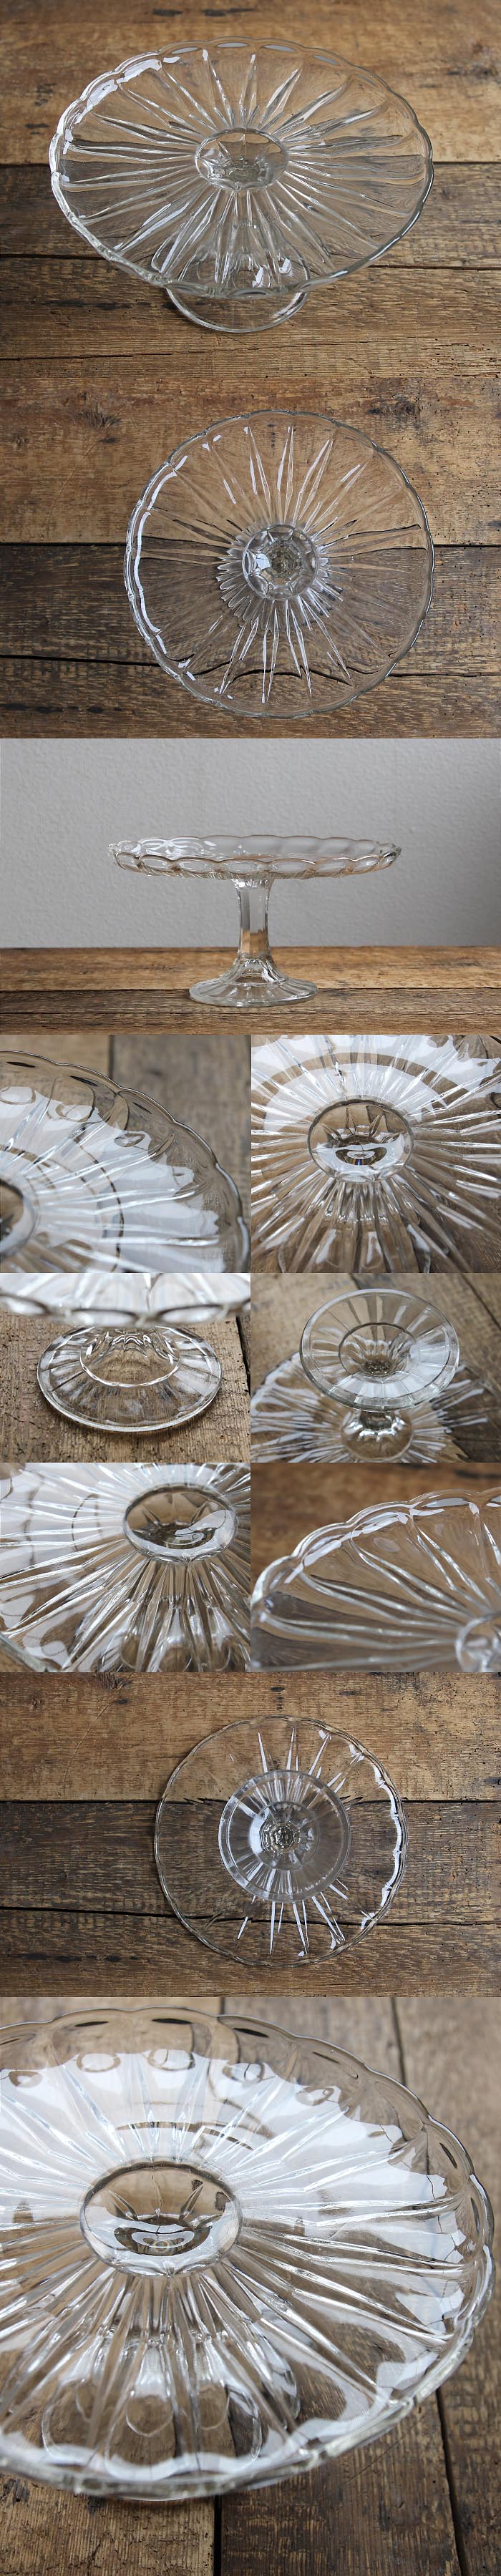 イギリス アンティーク調 ケーキスタンド コンポート皿 食器「プレスガラス」V-365